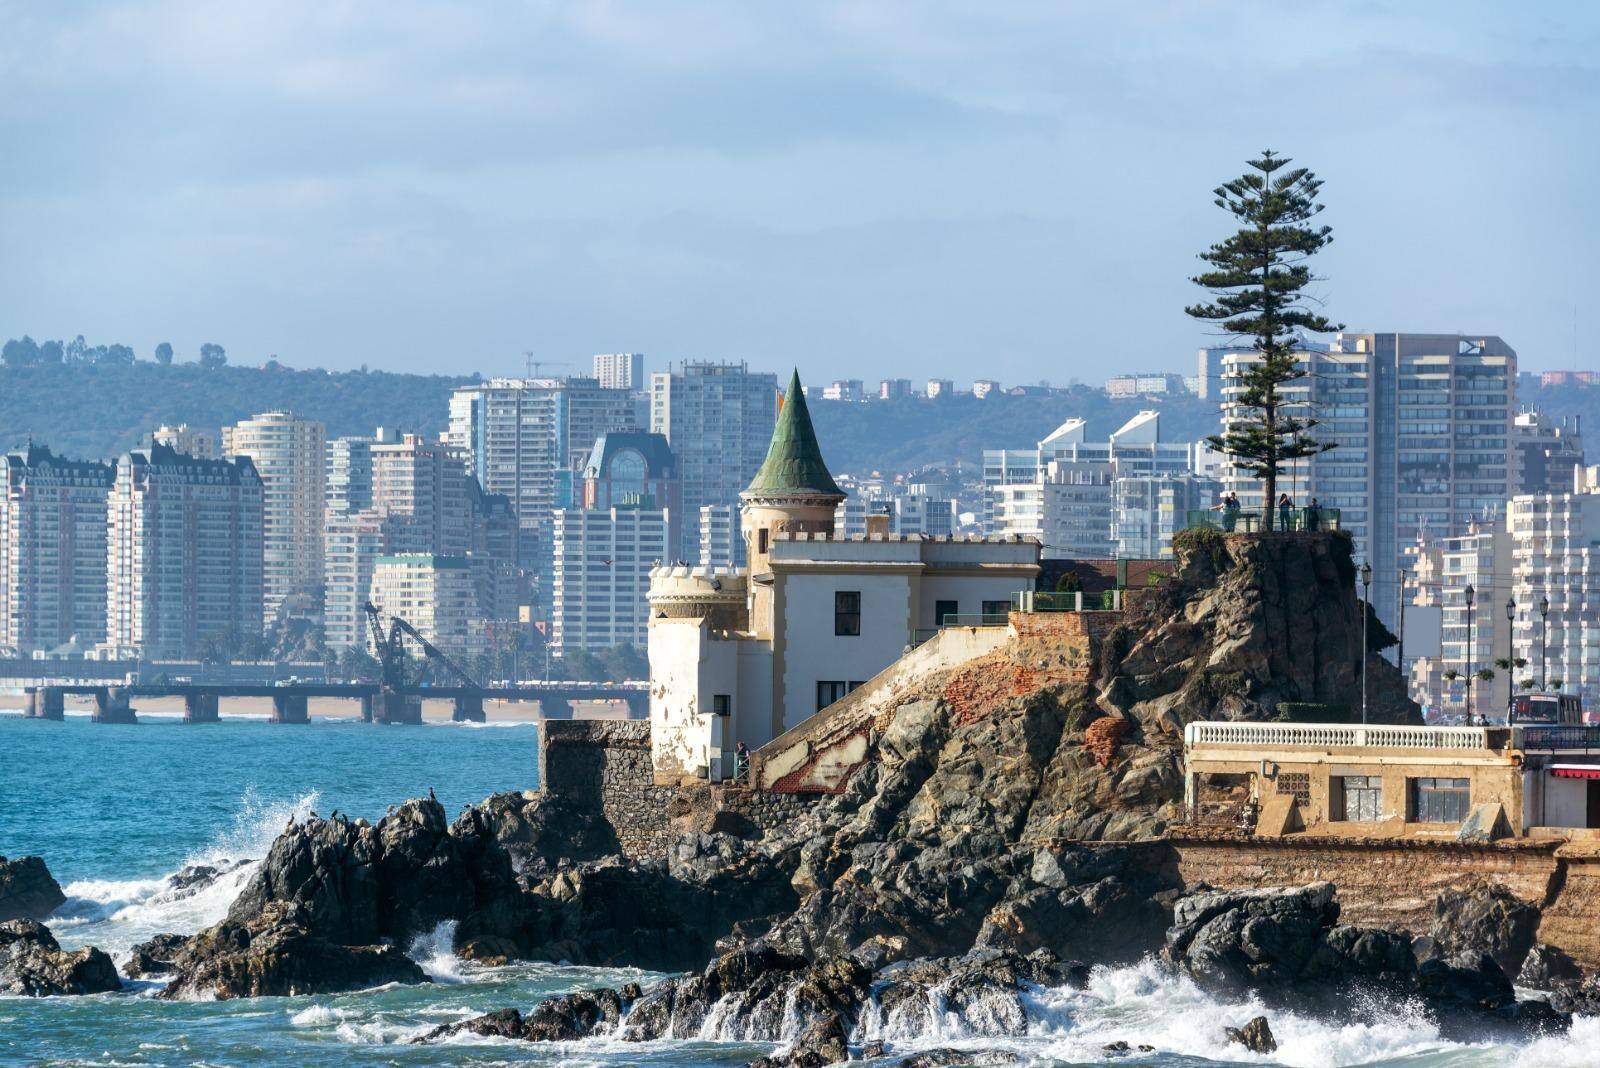 El gobierno de Chile emite un comunicado oficial para tranquilizar a los turistas